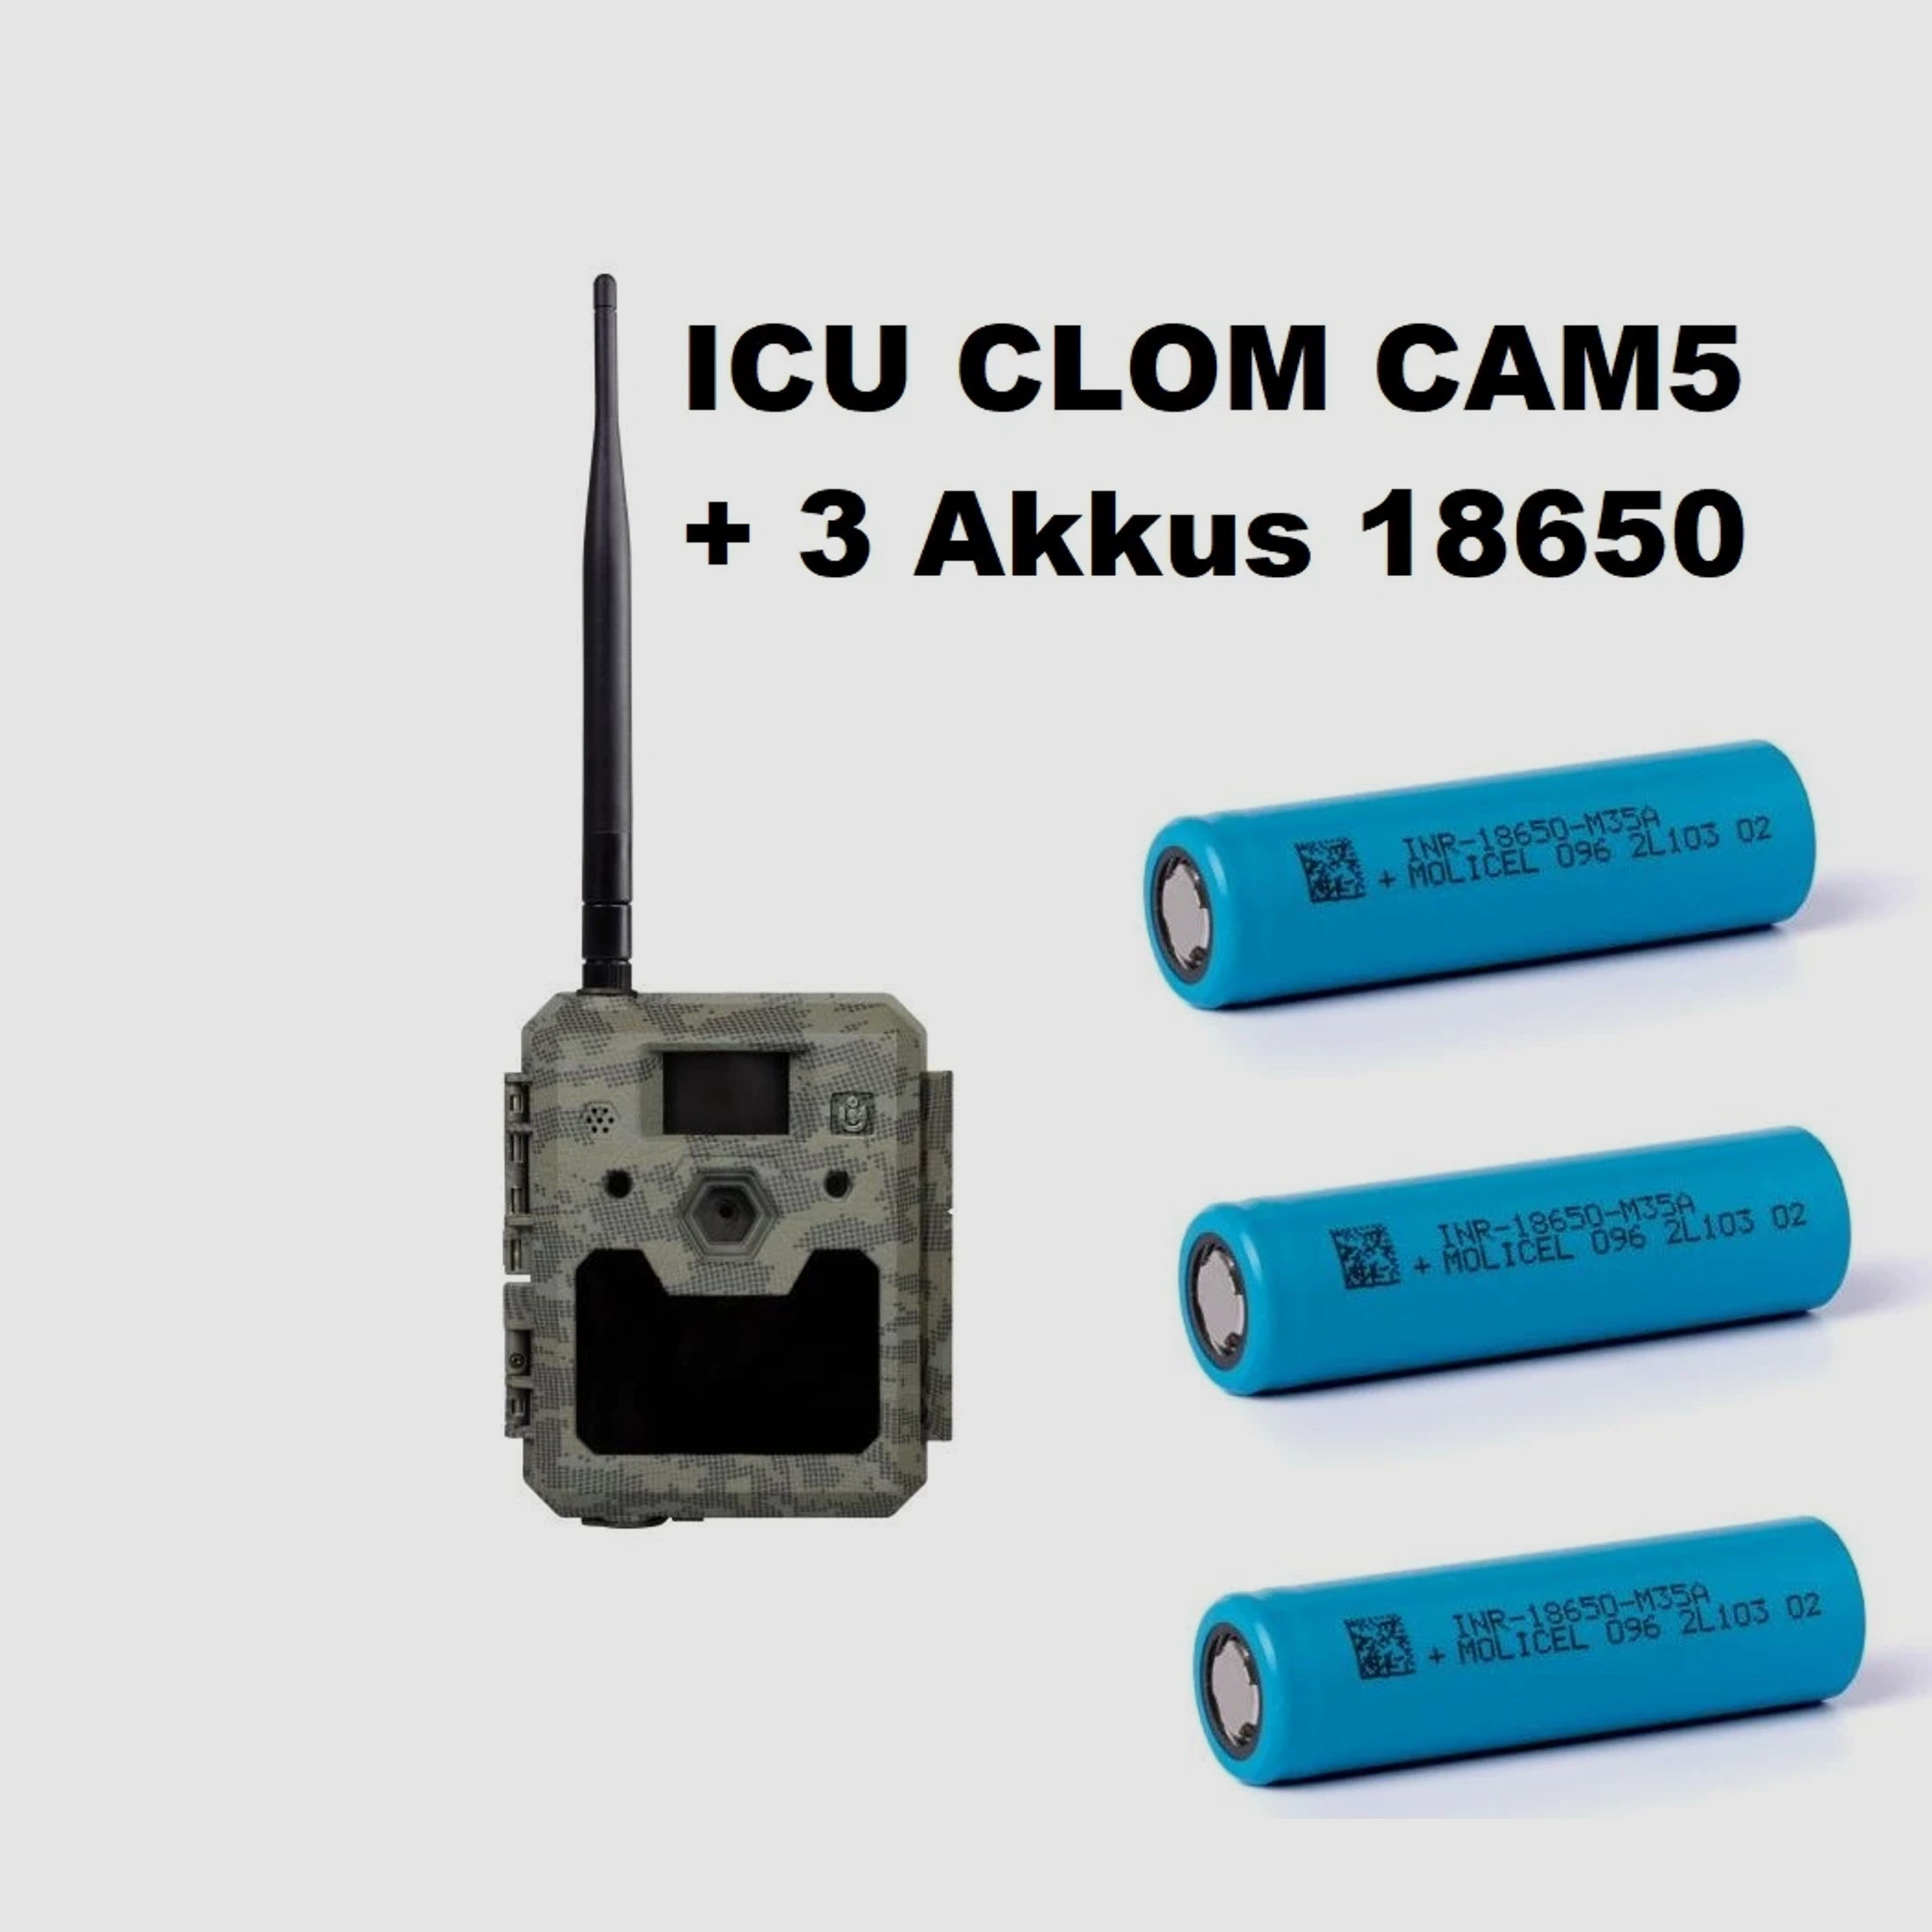 ICU CLOM CAM5 Wildkamera inkl.3x 18650 Akkus+2000 Coins